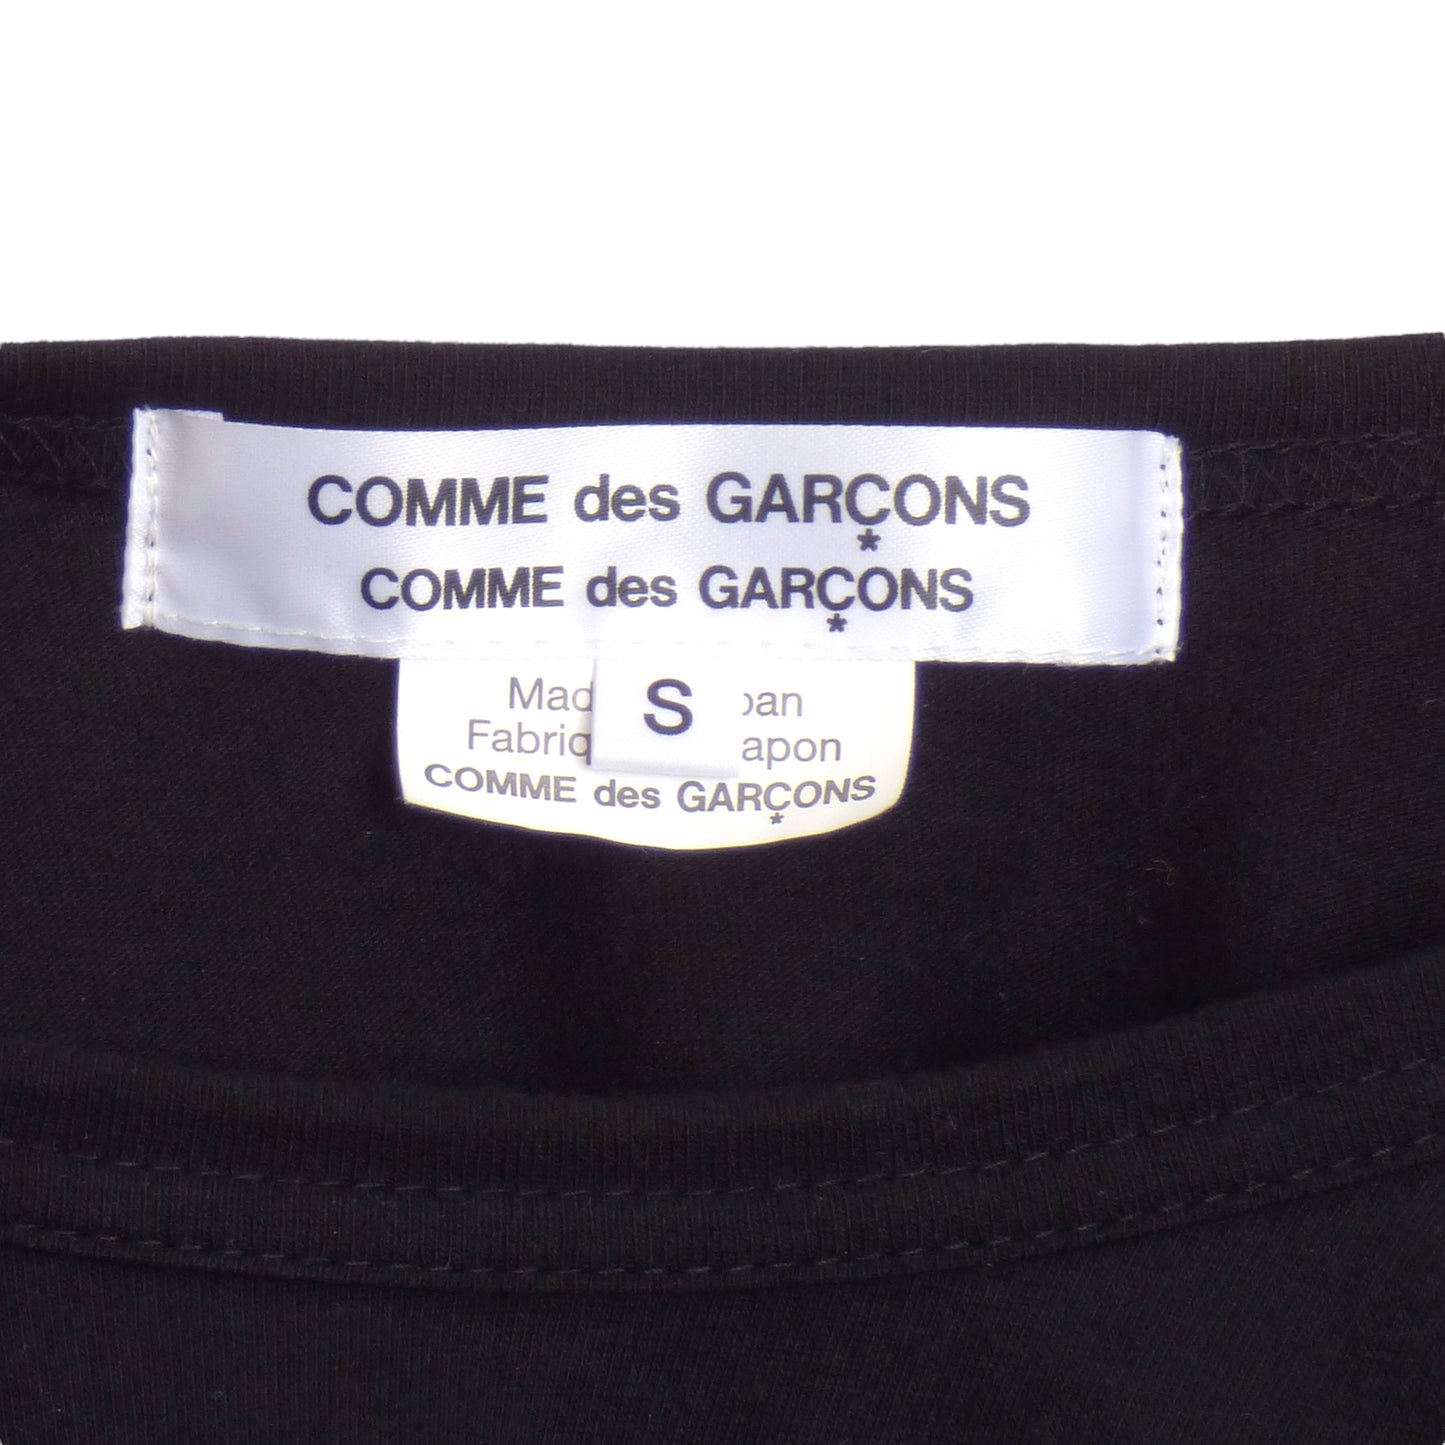 COMME DES GARCONS- 2019 Black Graphic Print T-Shirt, Size Small